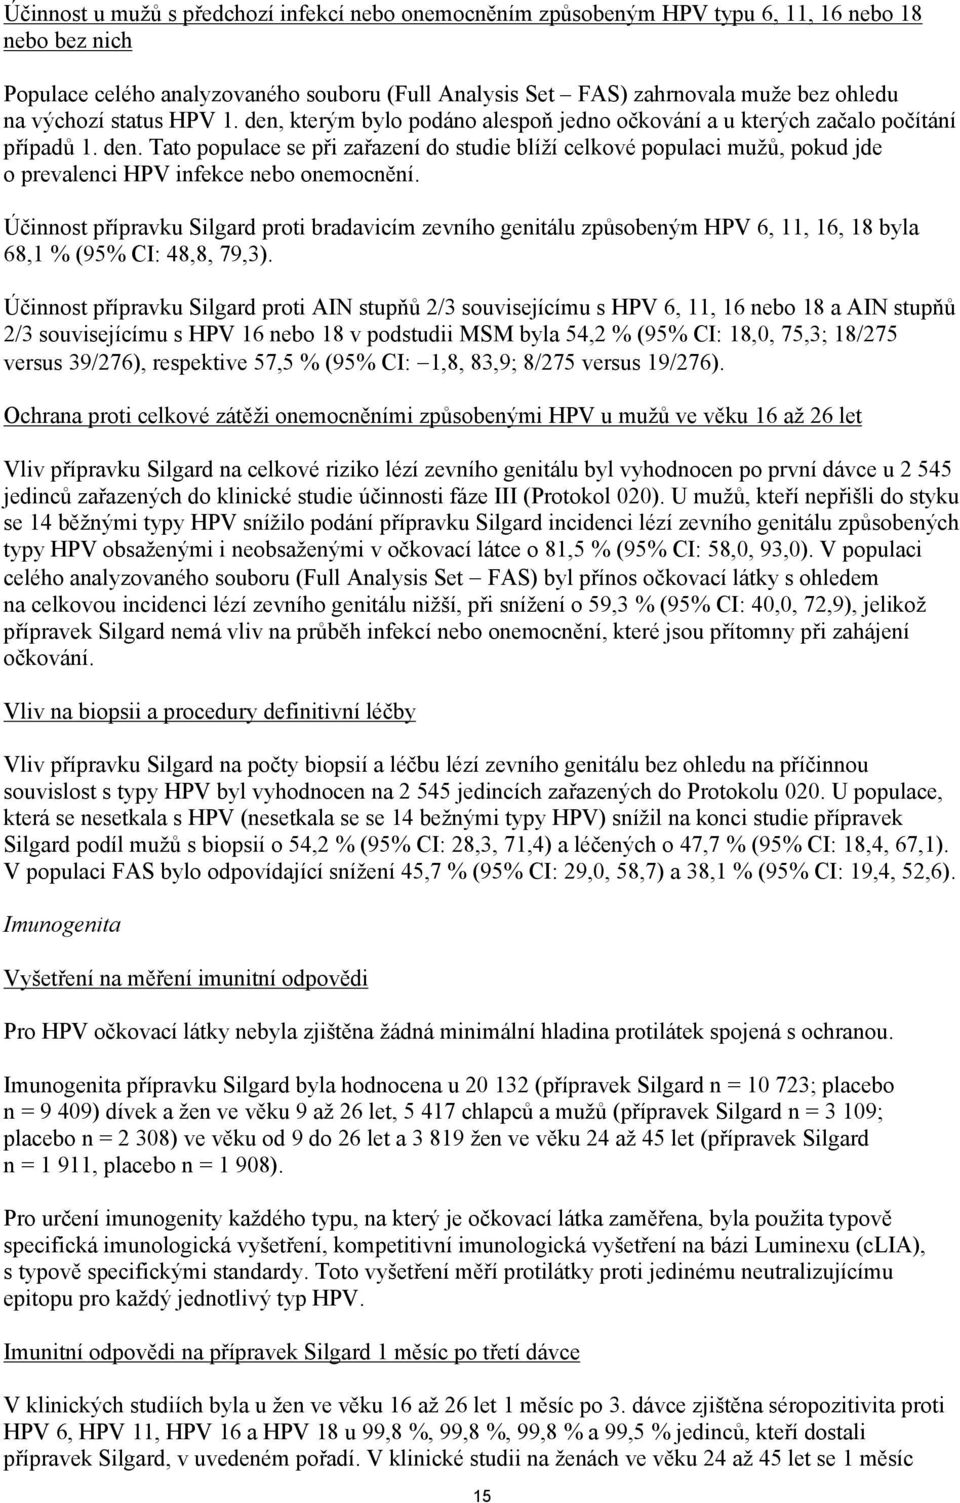 Účinnost přípravku Silgard proti bradavicím zevního genitálu způsobeným HPV 6, 11, 16, 18 byla 68,1 % (95% CI: 48,8, 79,3).